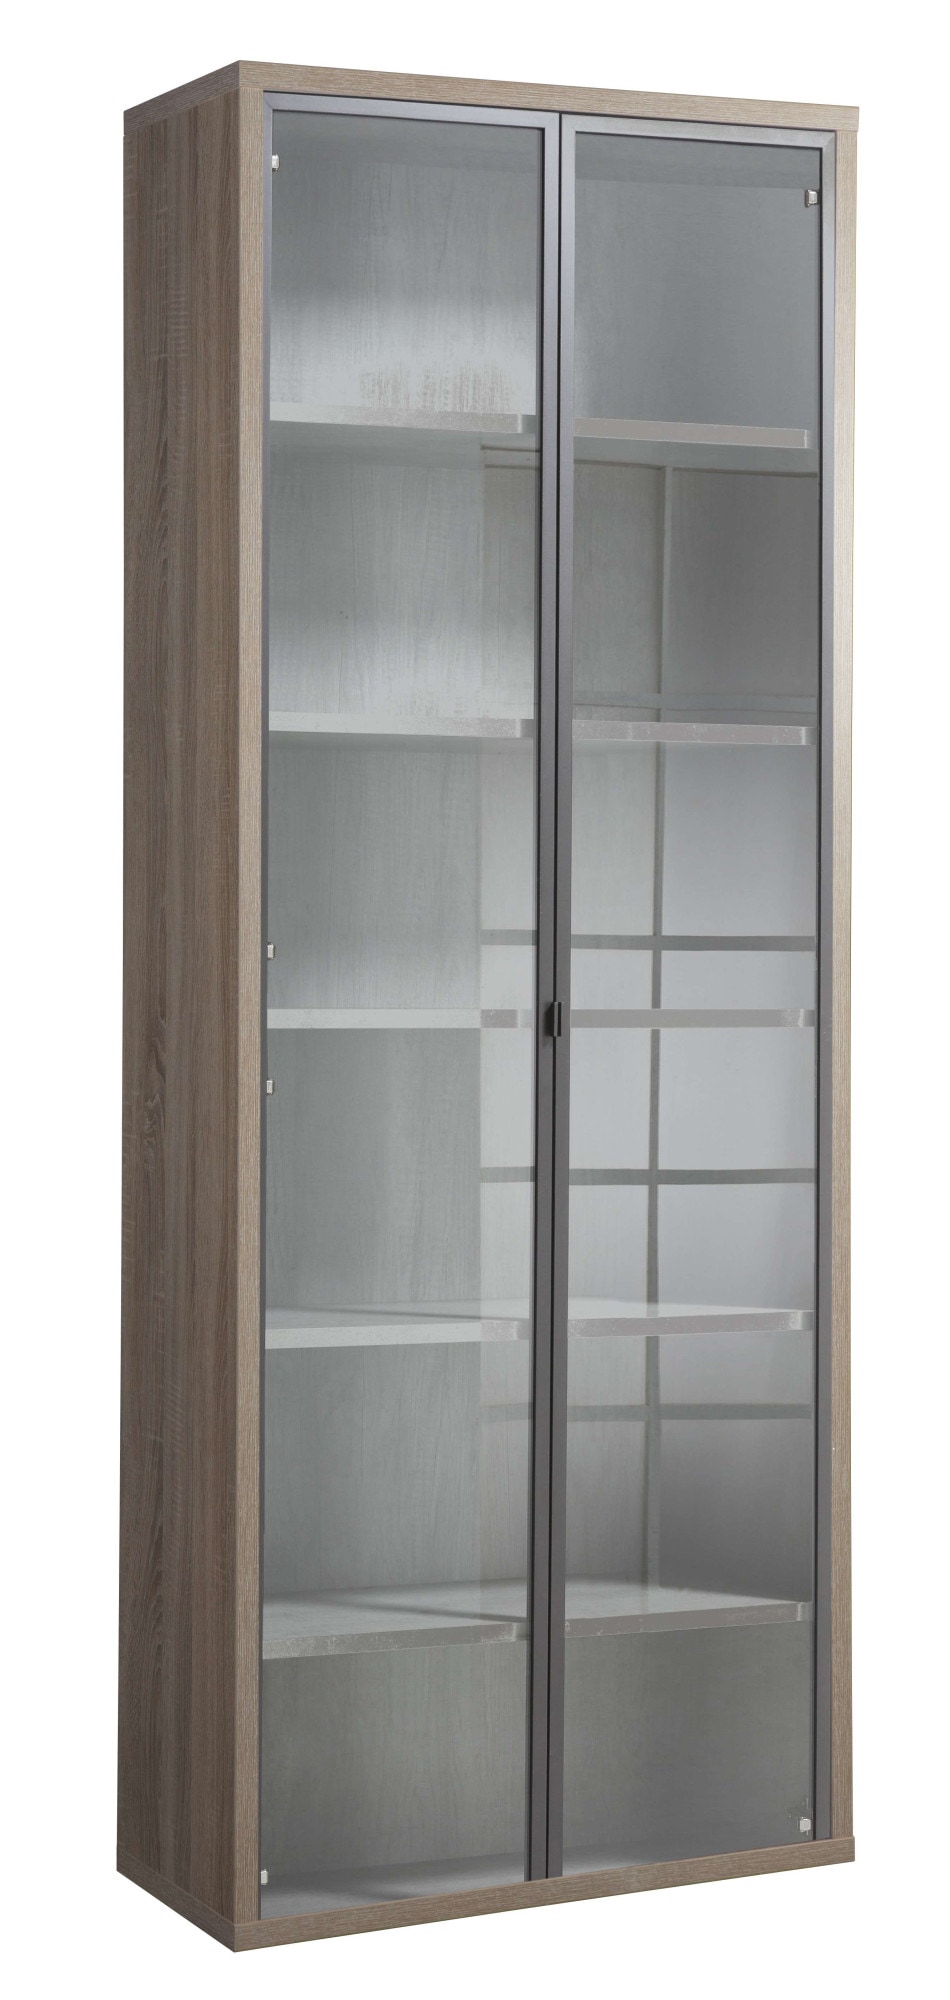 Composad Aktenschrank »DISEGNO, Bücherregal mit 2 Glastüren,«, verstellbare Böden, Höhe 217 cm, 100% recyceltes Holz, Made in Italy